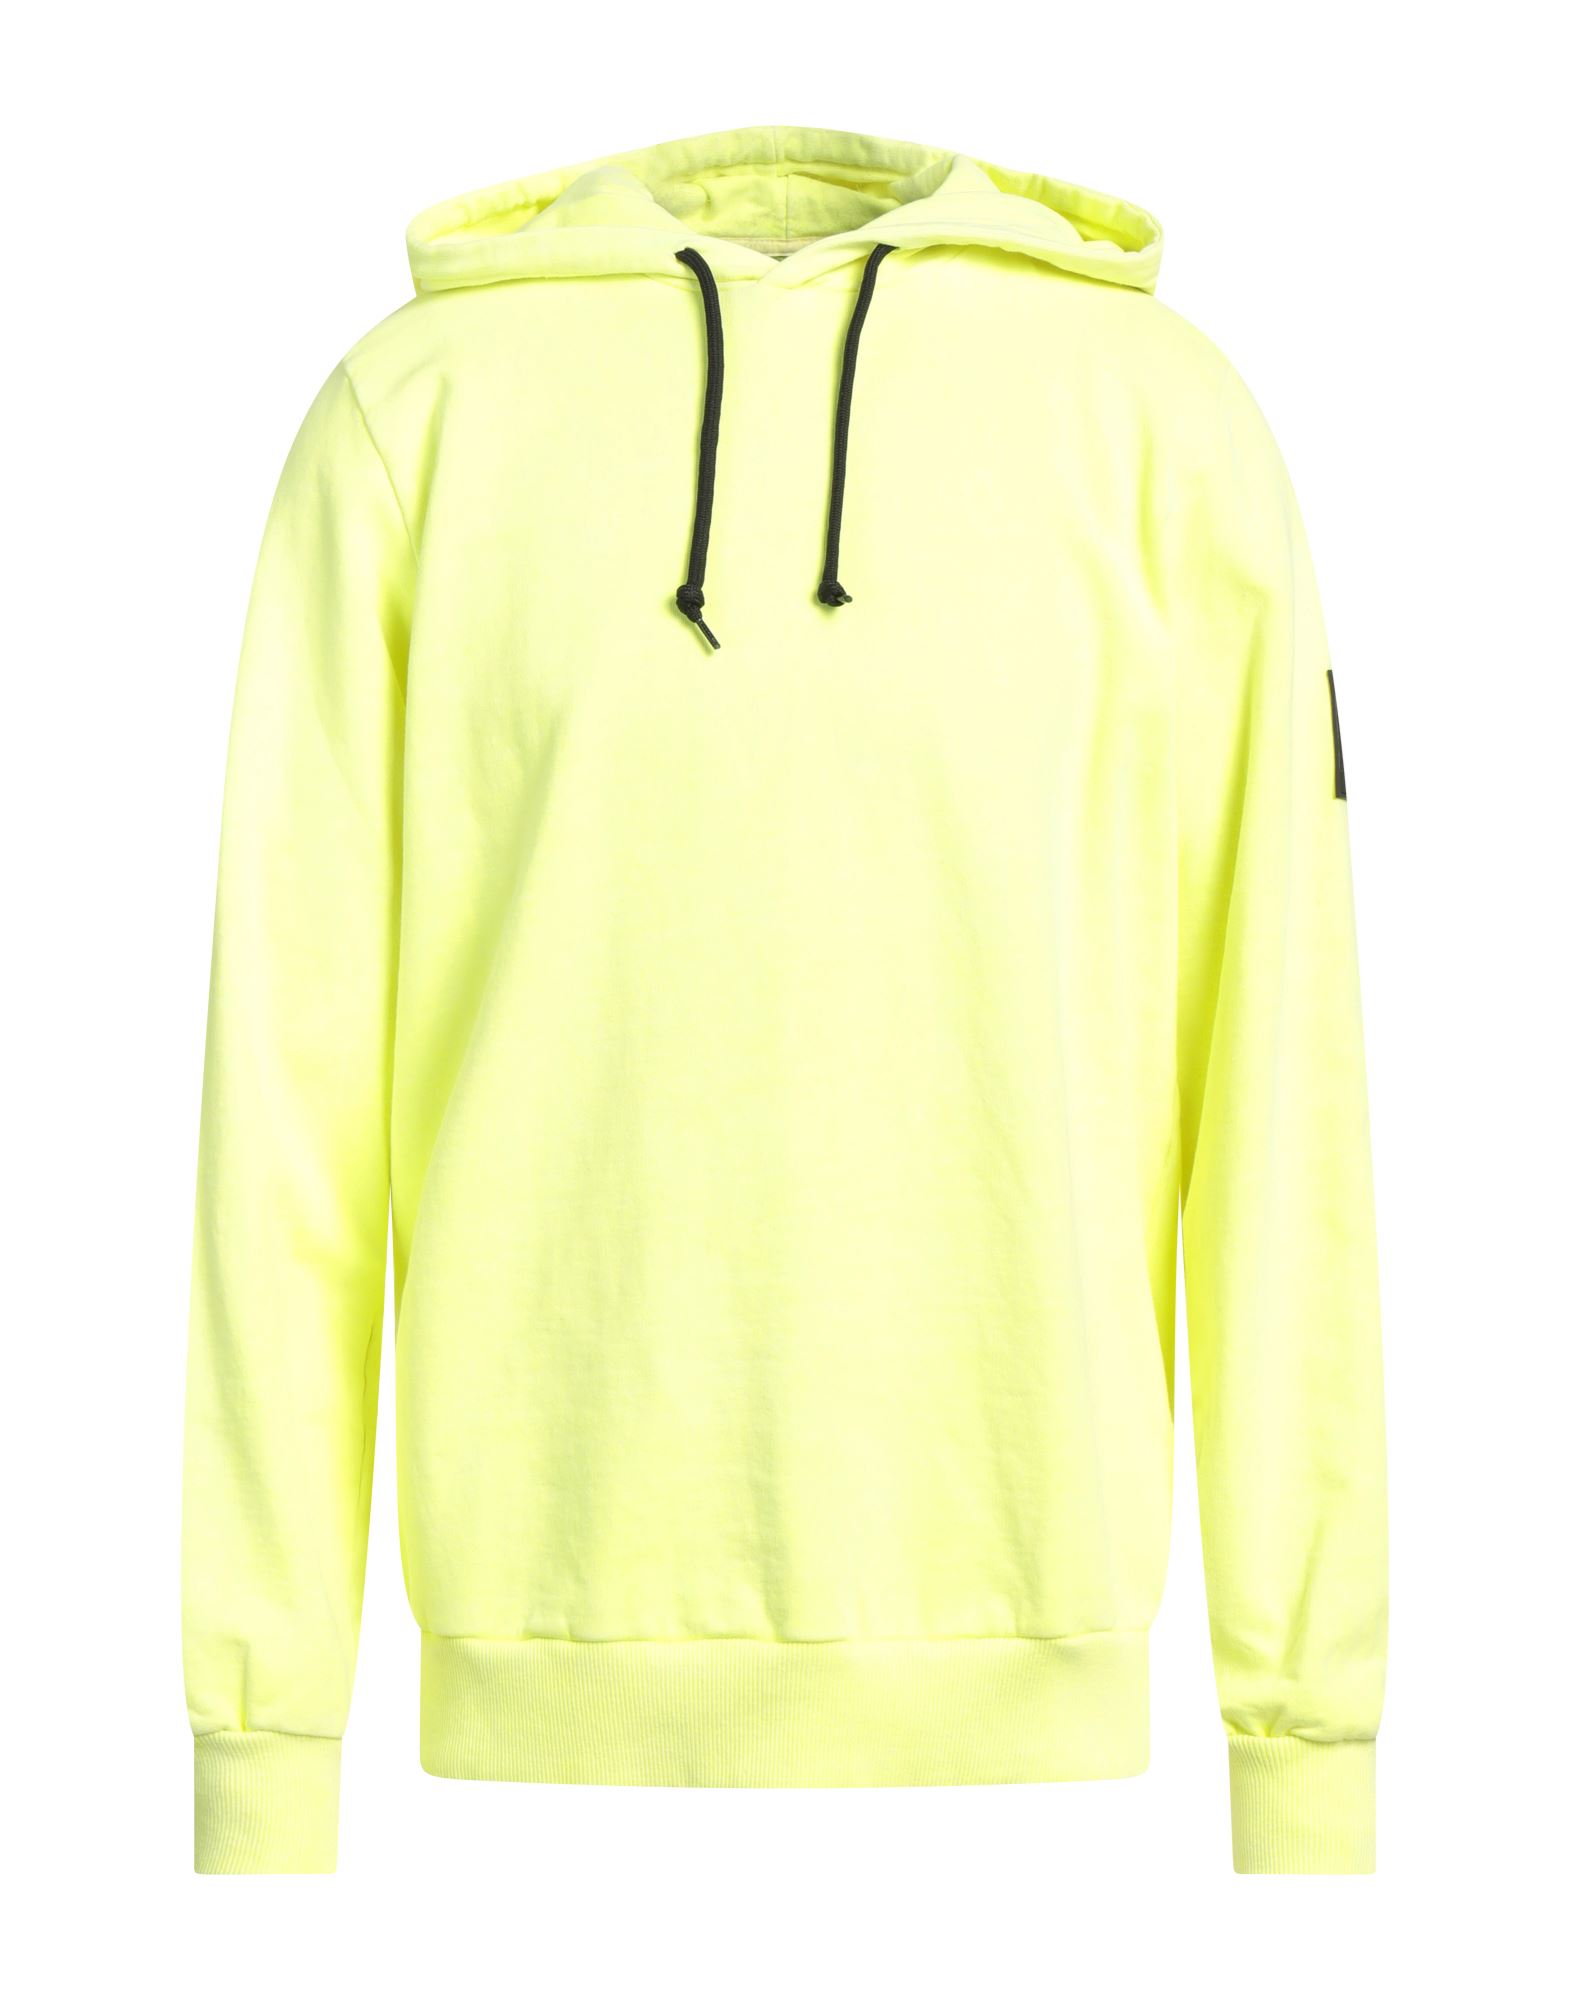 Shoe® Shoe Man Sweatshirt Light Yellow Size Xl Cotton